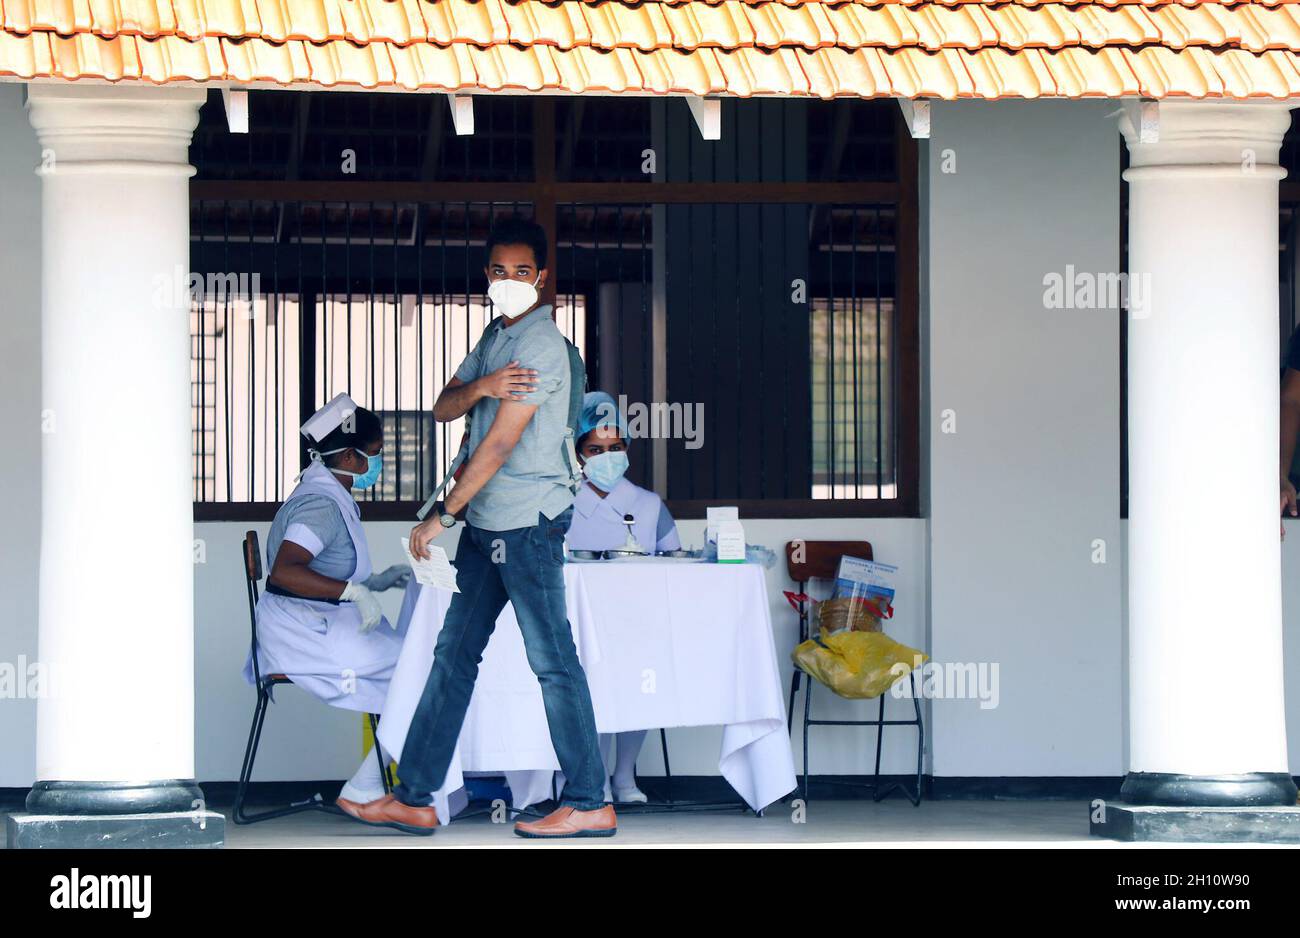 Colombo, Sri Lanka.15 octobre 2021.Un étudiant marche après avoir reçu un vaccin COVID-19 à Colombo, Sri Lanka, le 15 octobre 2021.Vendredi, les autorités sanitaires sri lankaises ont commencé à administrer les vaccins COVID-19 à des élèves âgés de 18 à 19 ans avec les doses Pfizer dans le cadre d'un programme de vaccination à grande échelle en cours dans le pays depuis janvier.Crédit: Ajith Perera/Xinhua/Alamy Live News Banque D'Images